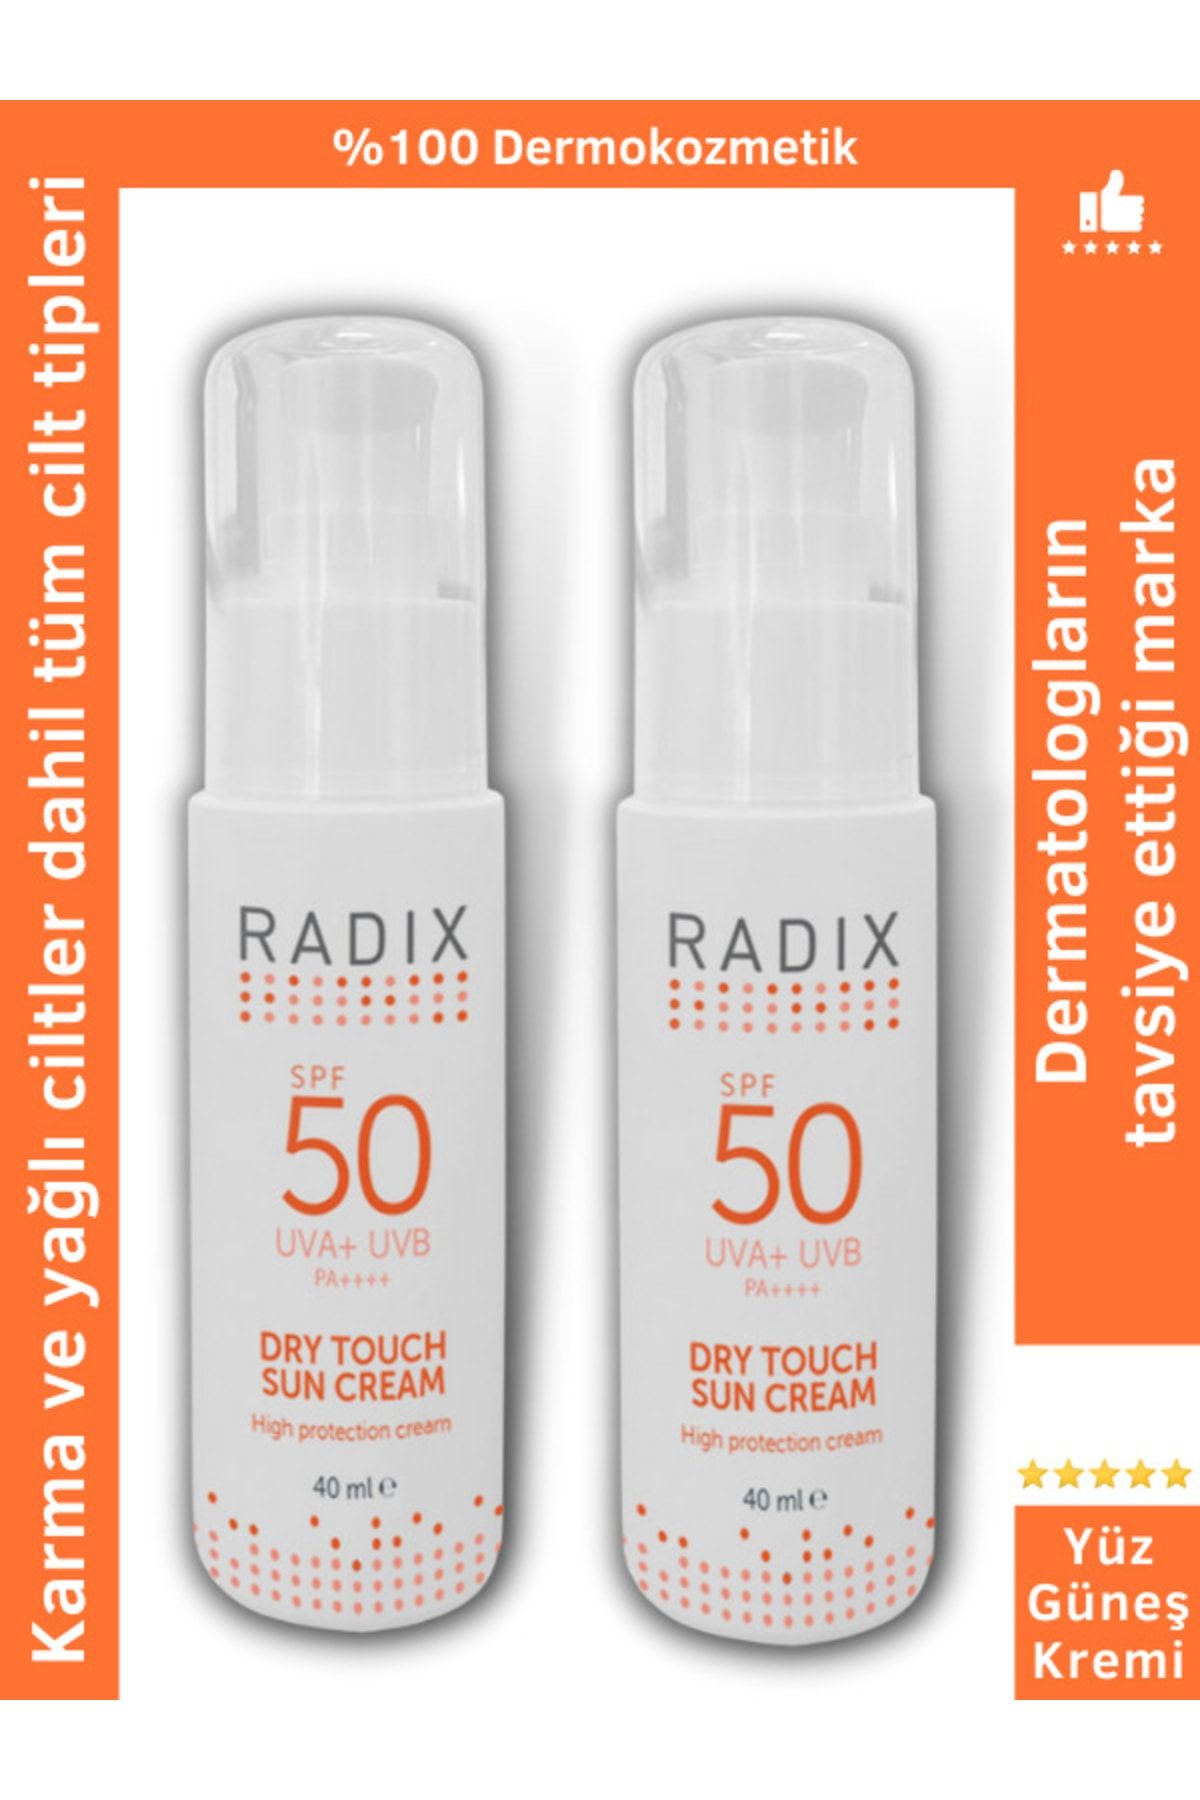 Radix 2 Adet Yüz Güneş Kremi - Karma Yağlı Ciltler Dry Touch Sun Cream Spf50 40 ml 2 Adet 8681877436011